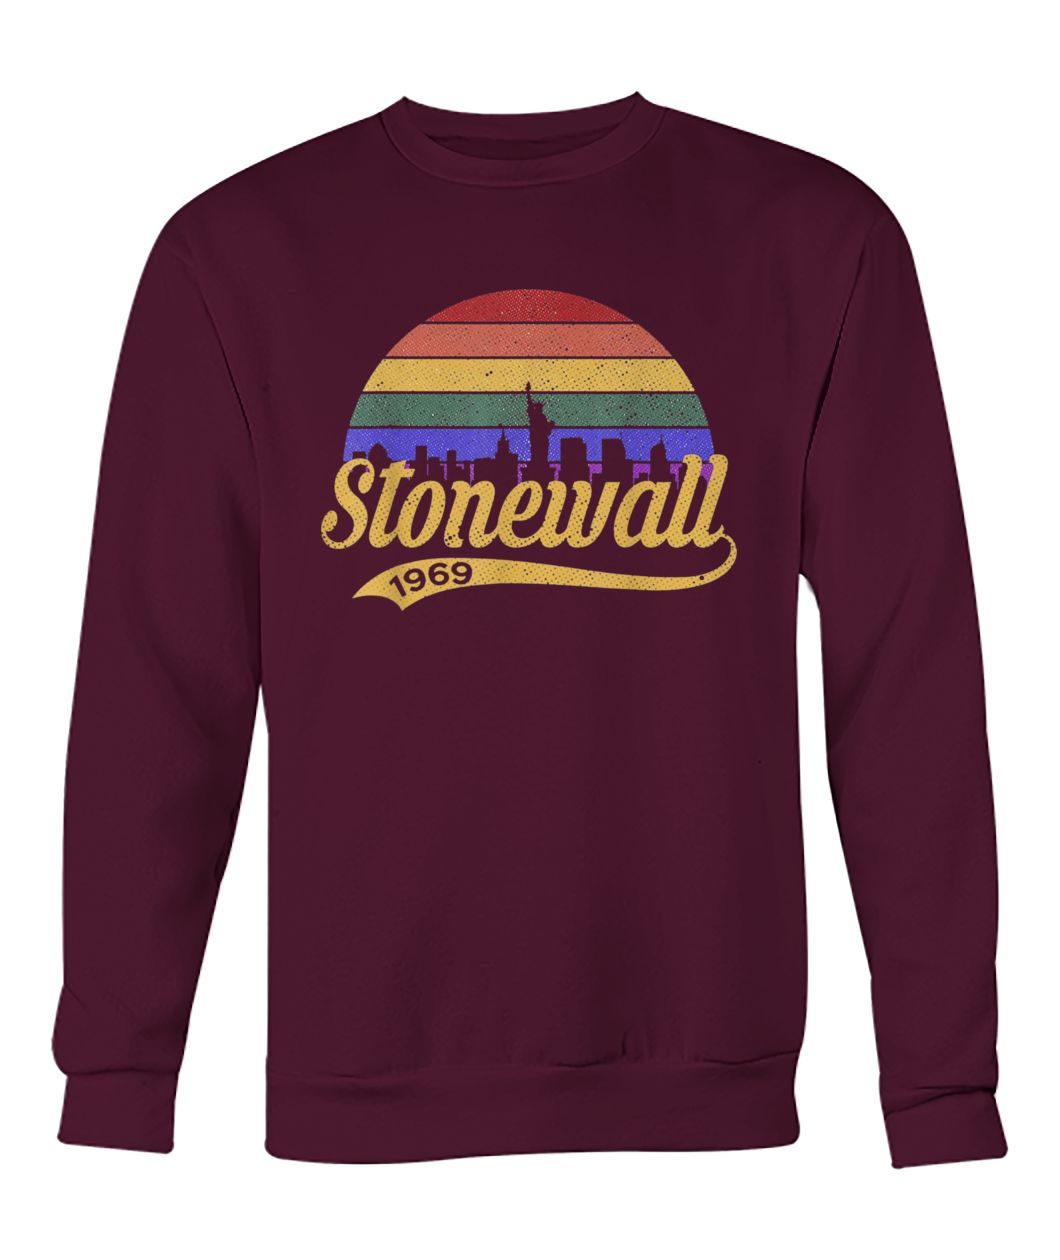 50th anniversary stonewall riots 50th nyc gay pride lbgtq rights crew neck sweatshirt